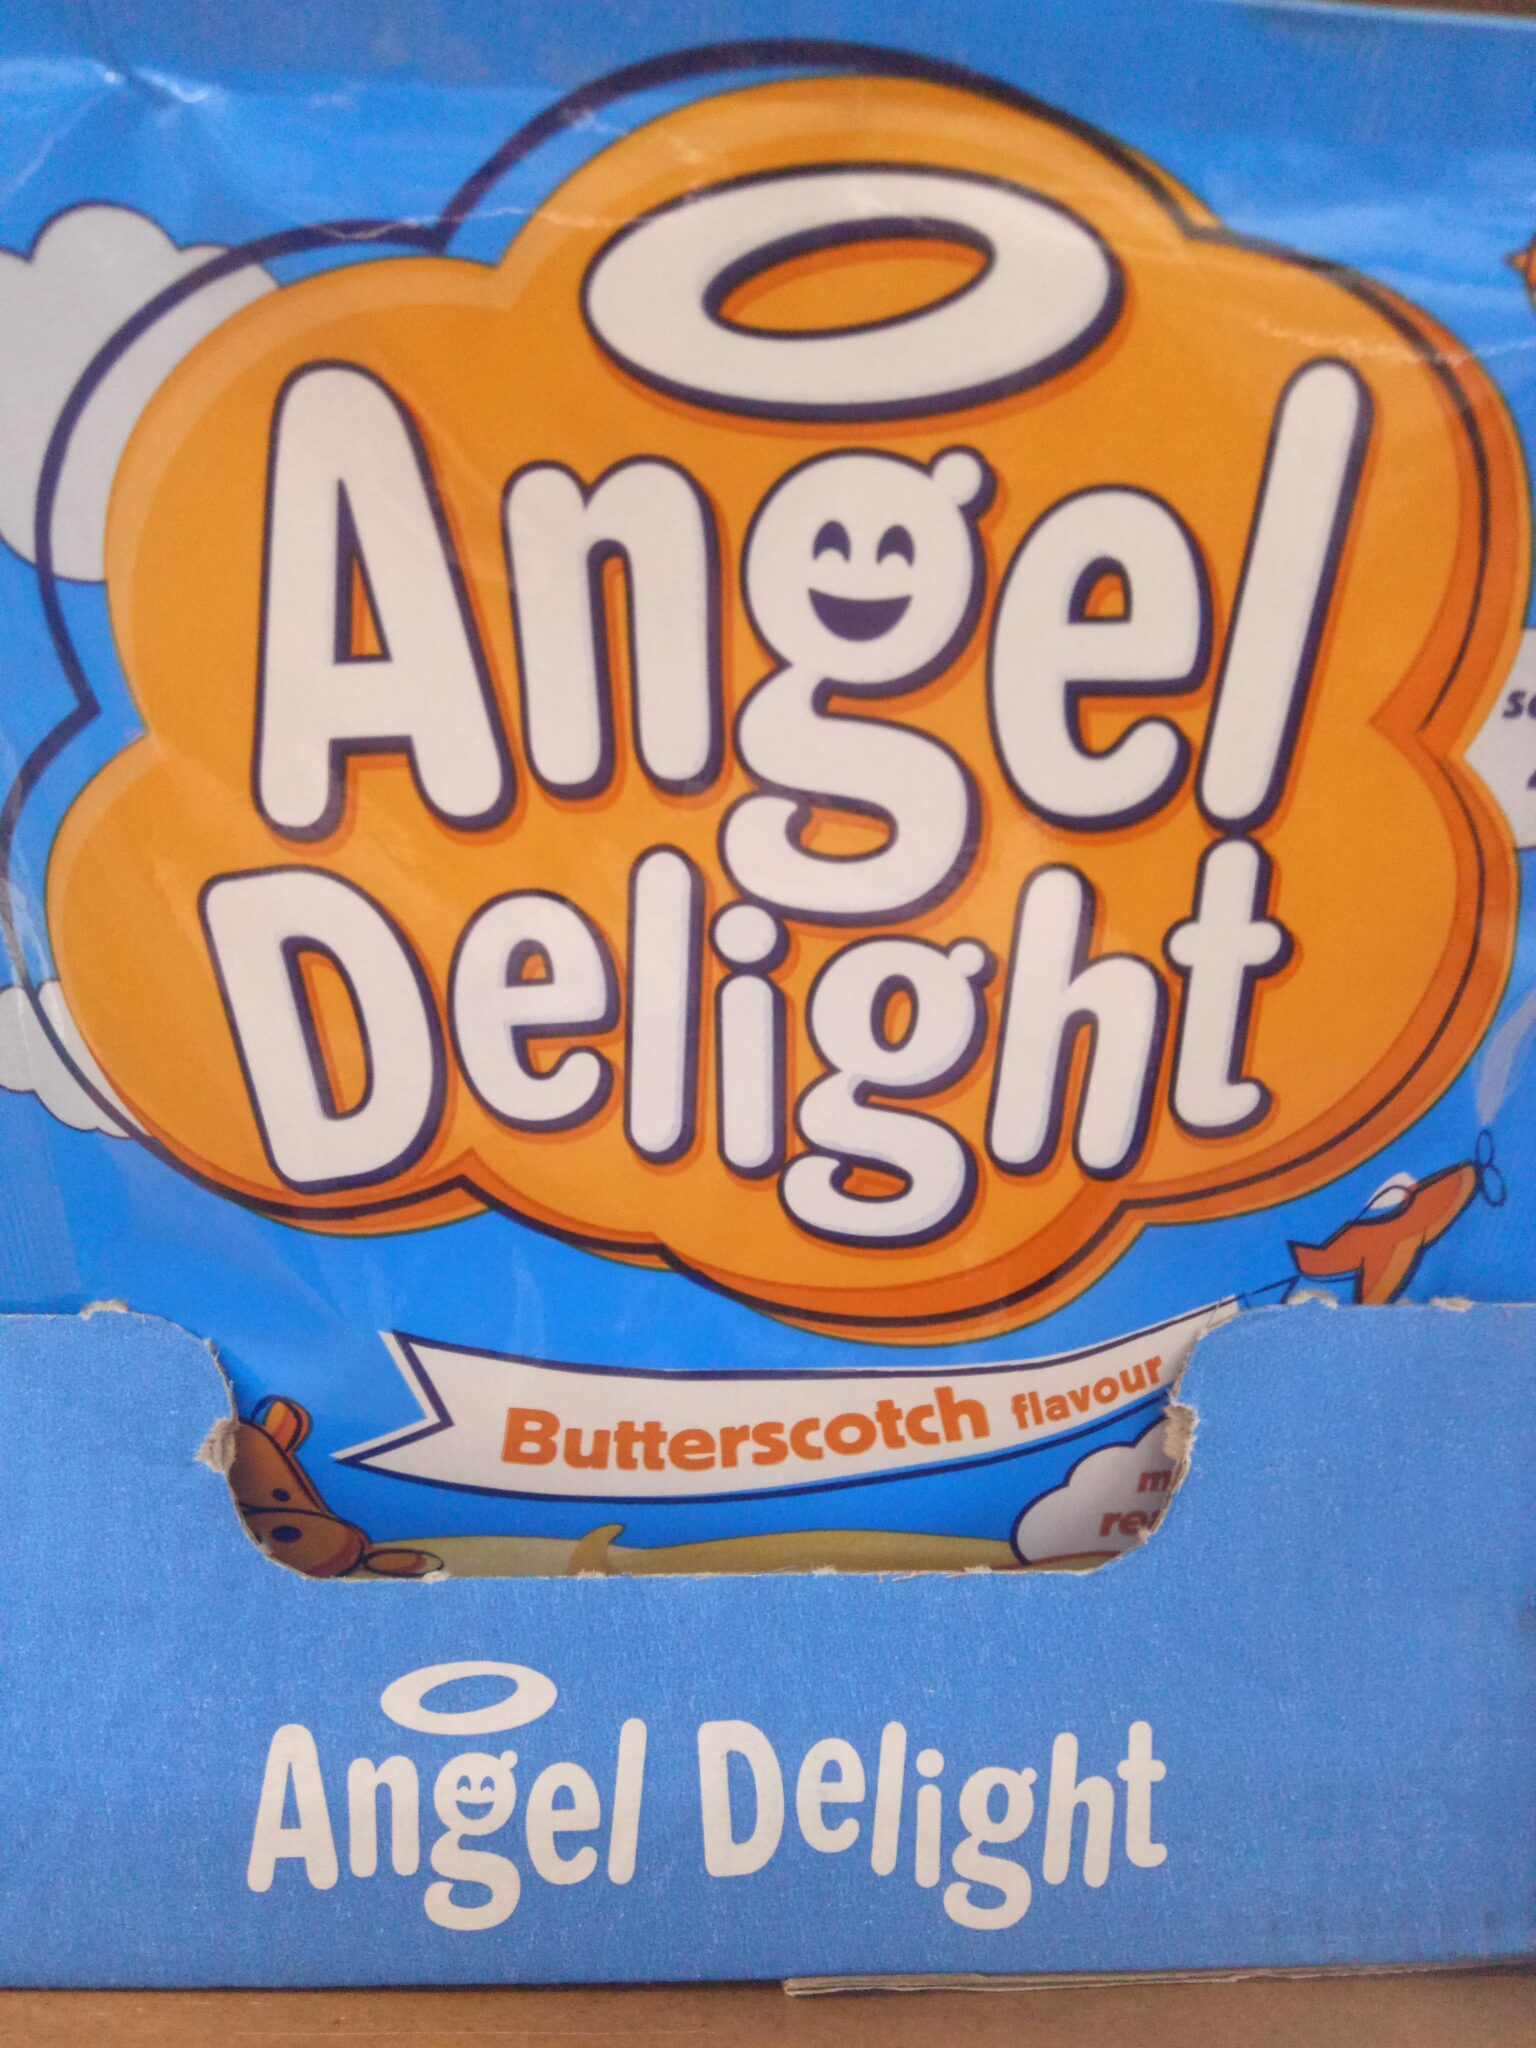 Angel delight – butterscotch – Mowatt